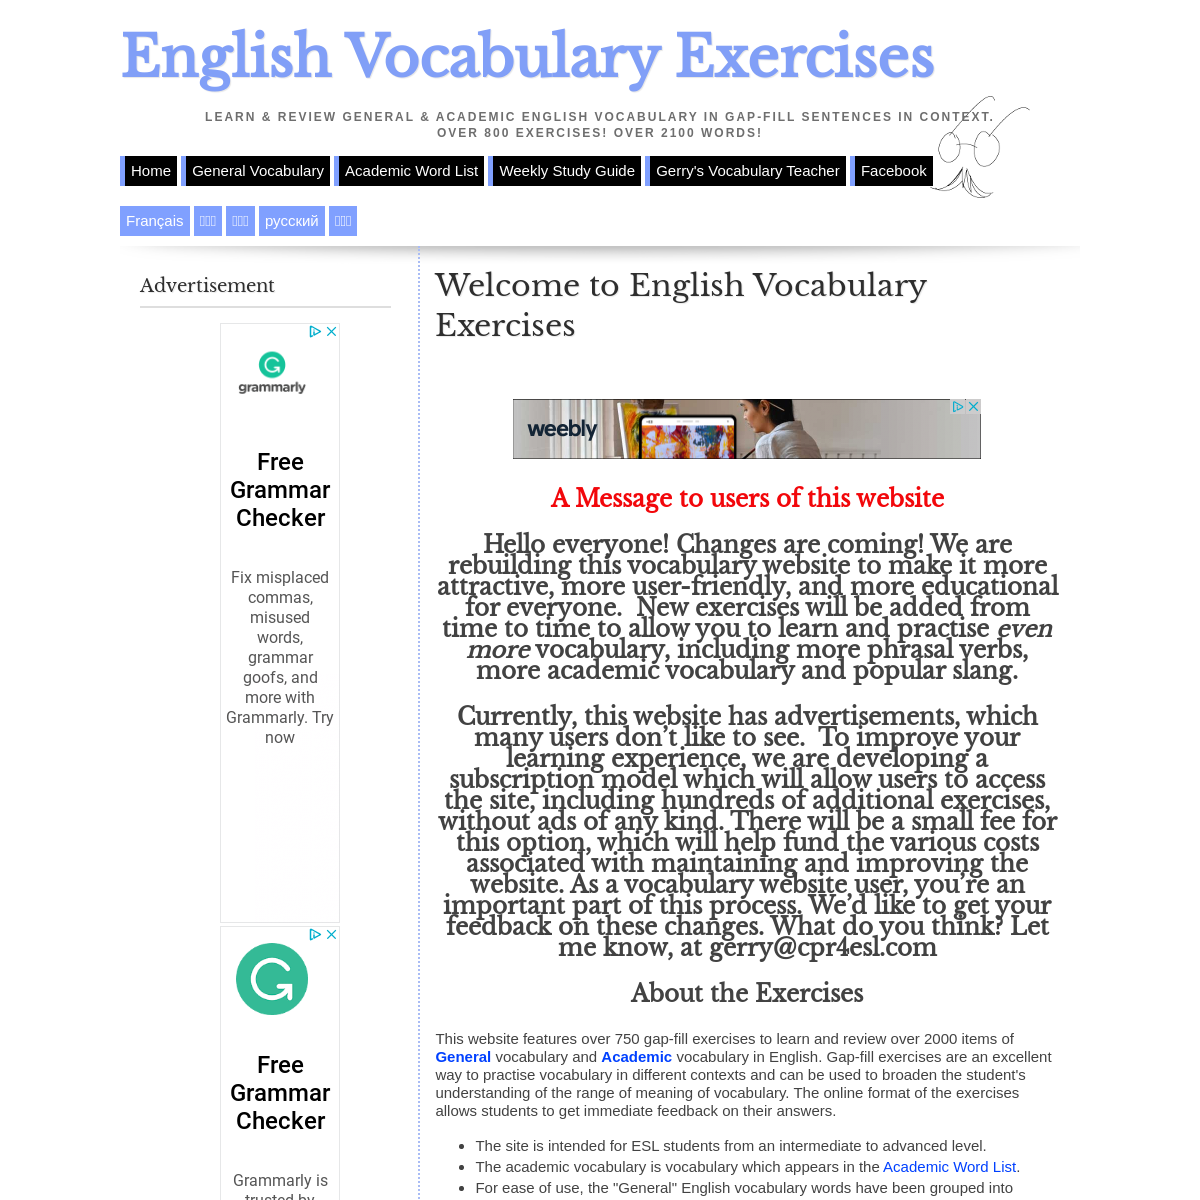 A complete backup of englishvocabularyexercises.com